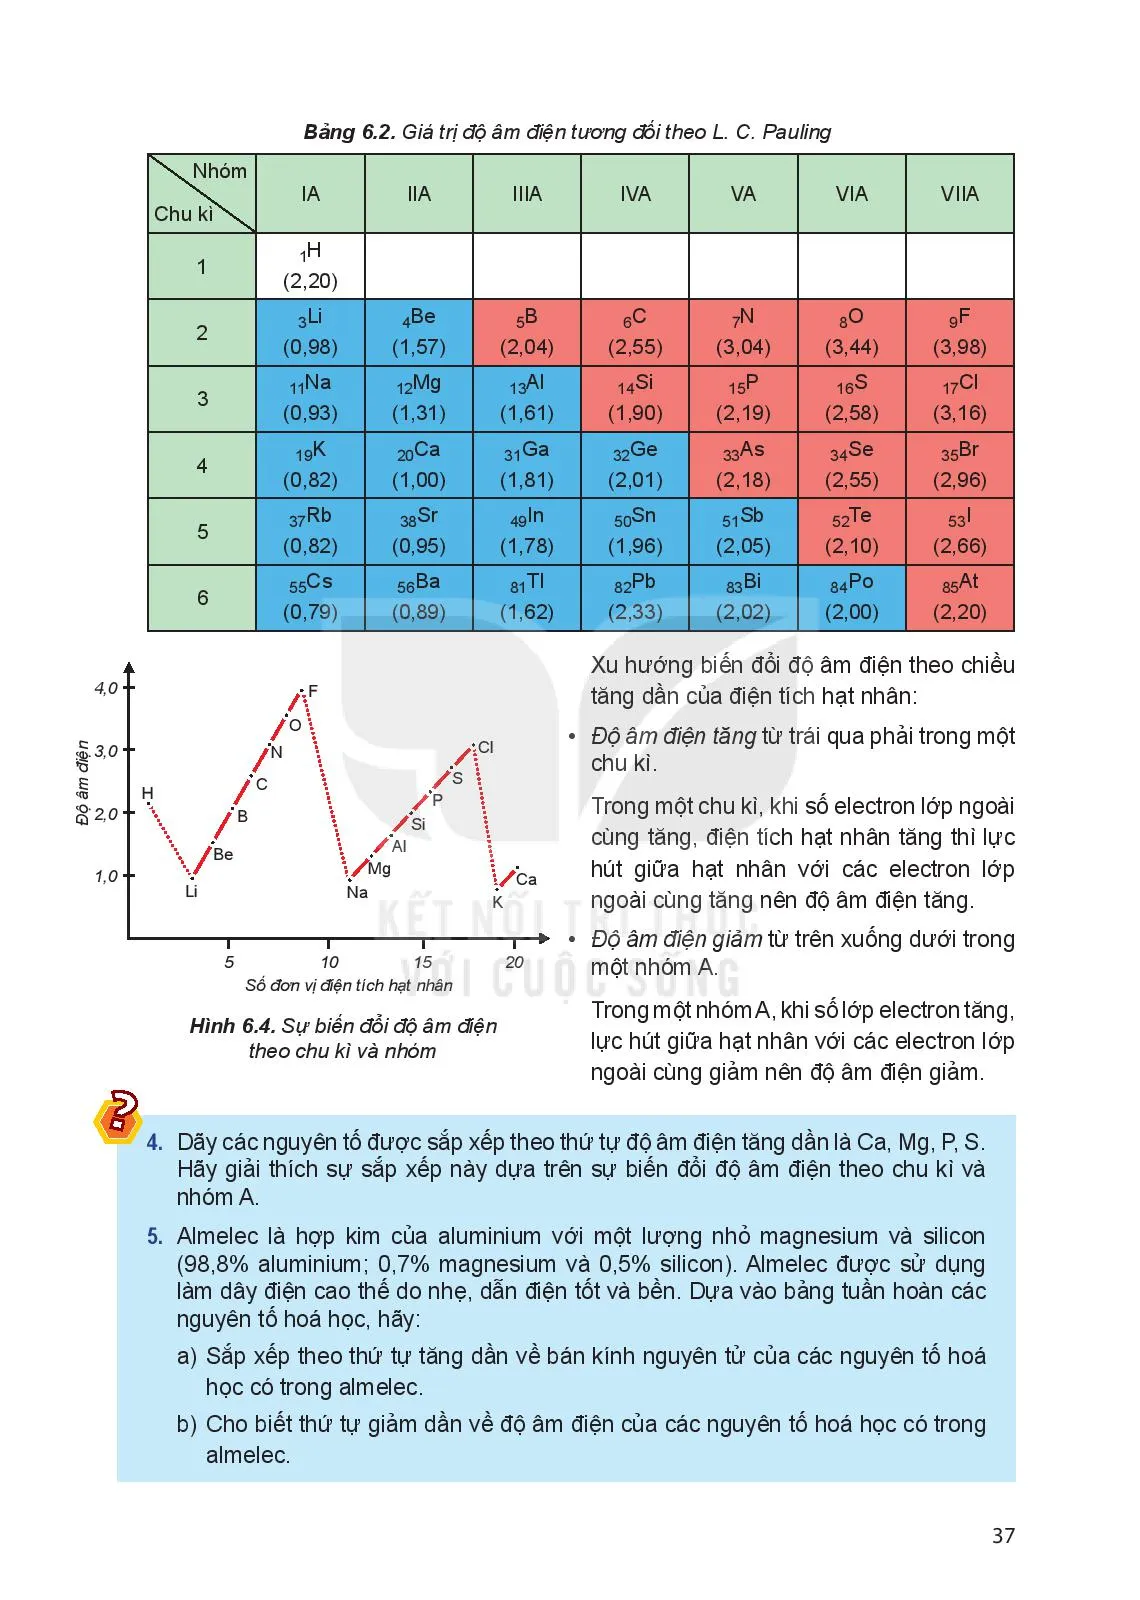 Bài 6. Xu hướng biến đổi một số tính chất của nguyên tử các nguyên tố trong một chu kì và trong một nhóm